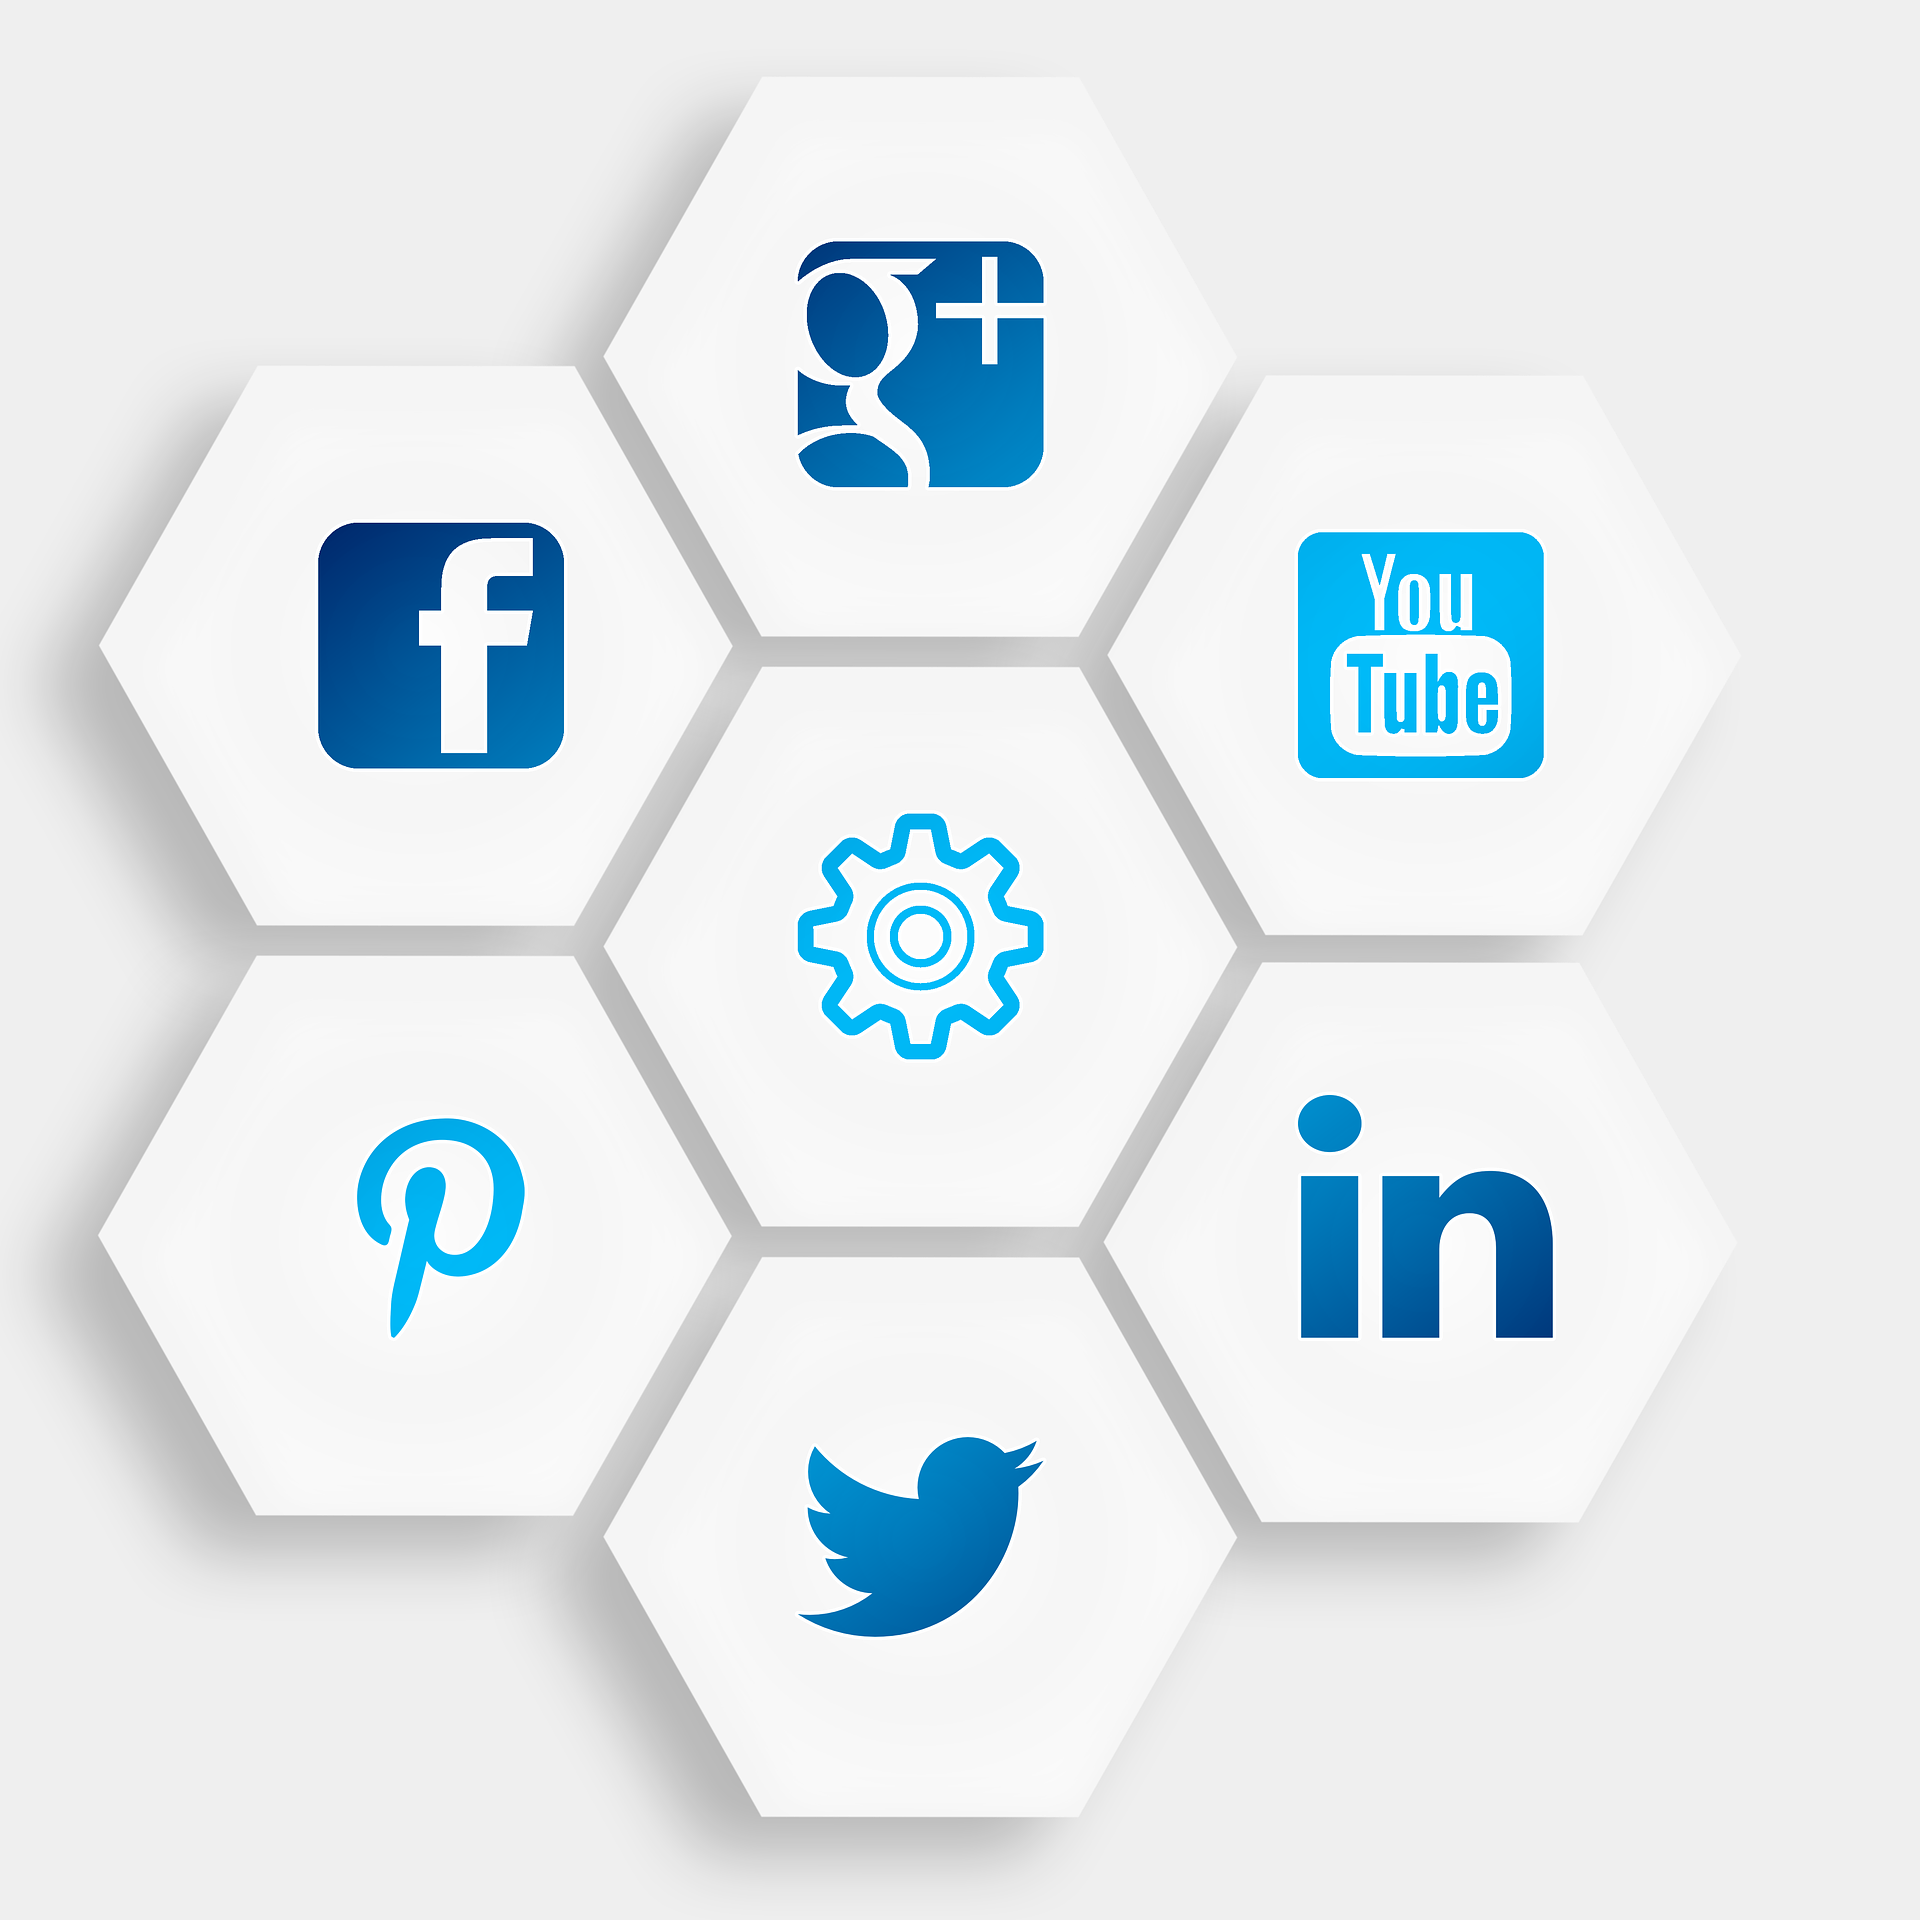 Social media platform icons